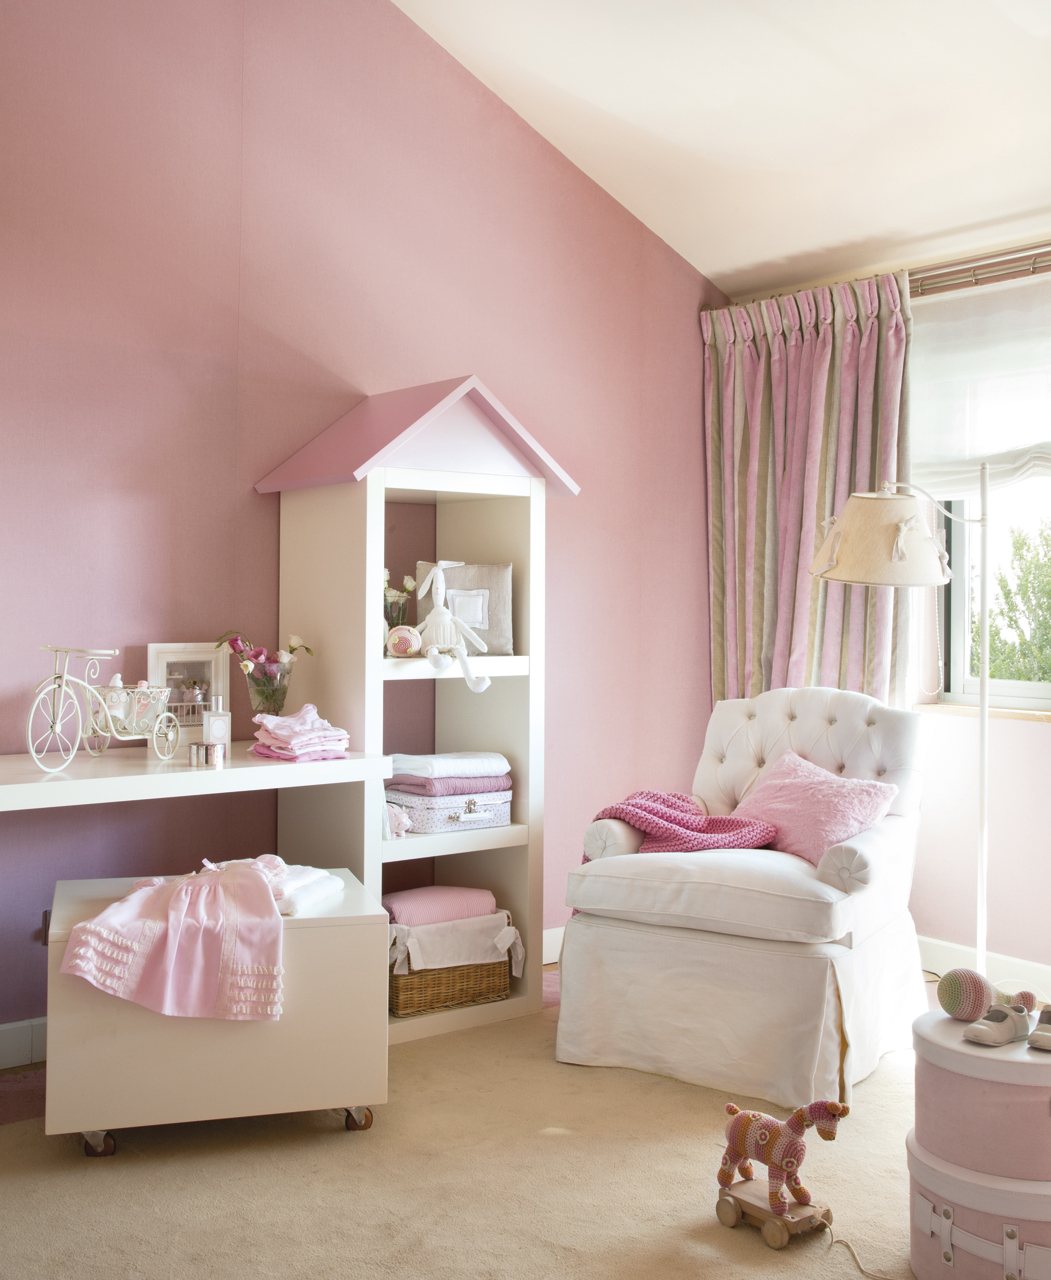 Zona con butaca y almacenaje. Dormitorio infantil blanco y rosa con sillÃ³n y estanterÃ­as